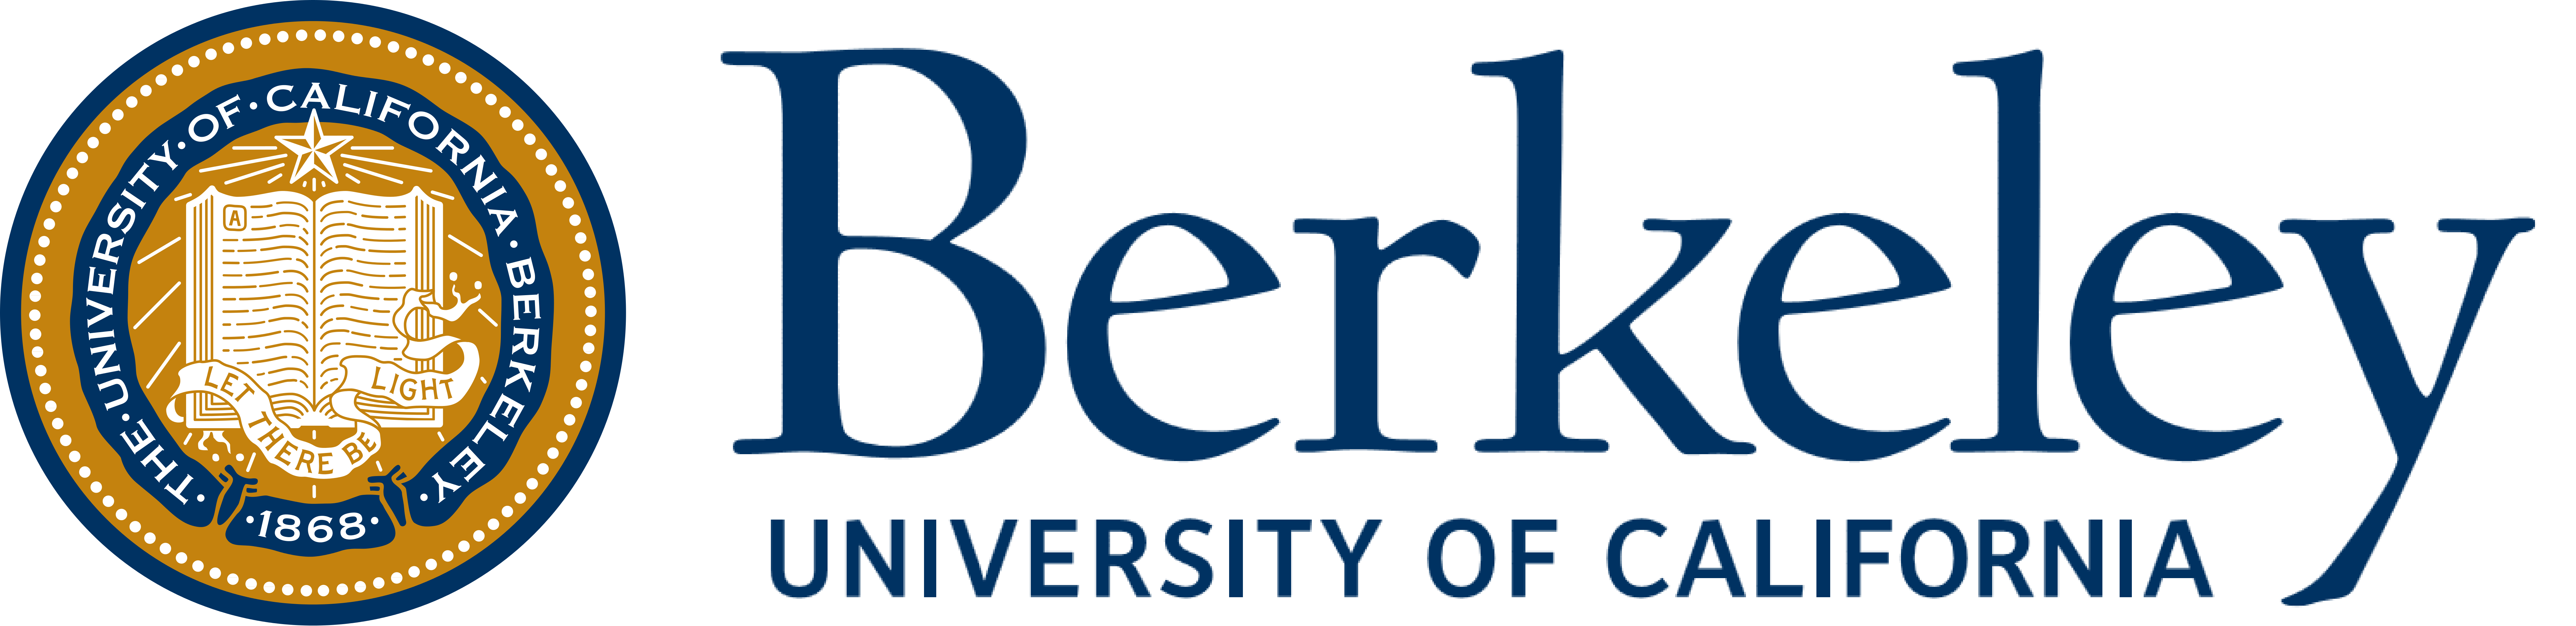 Uc Berkeley Logos